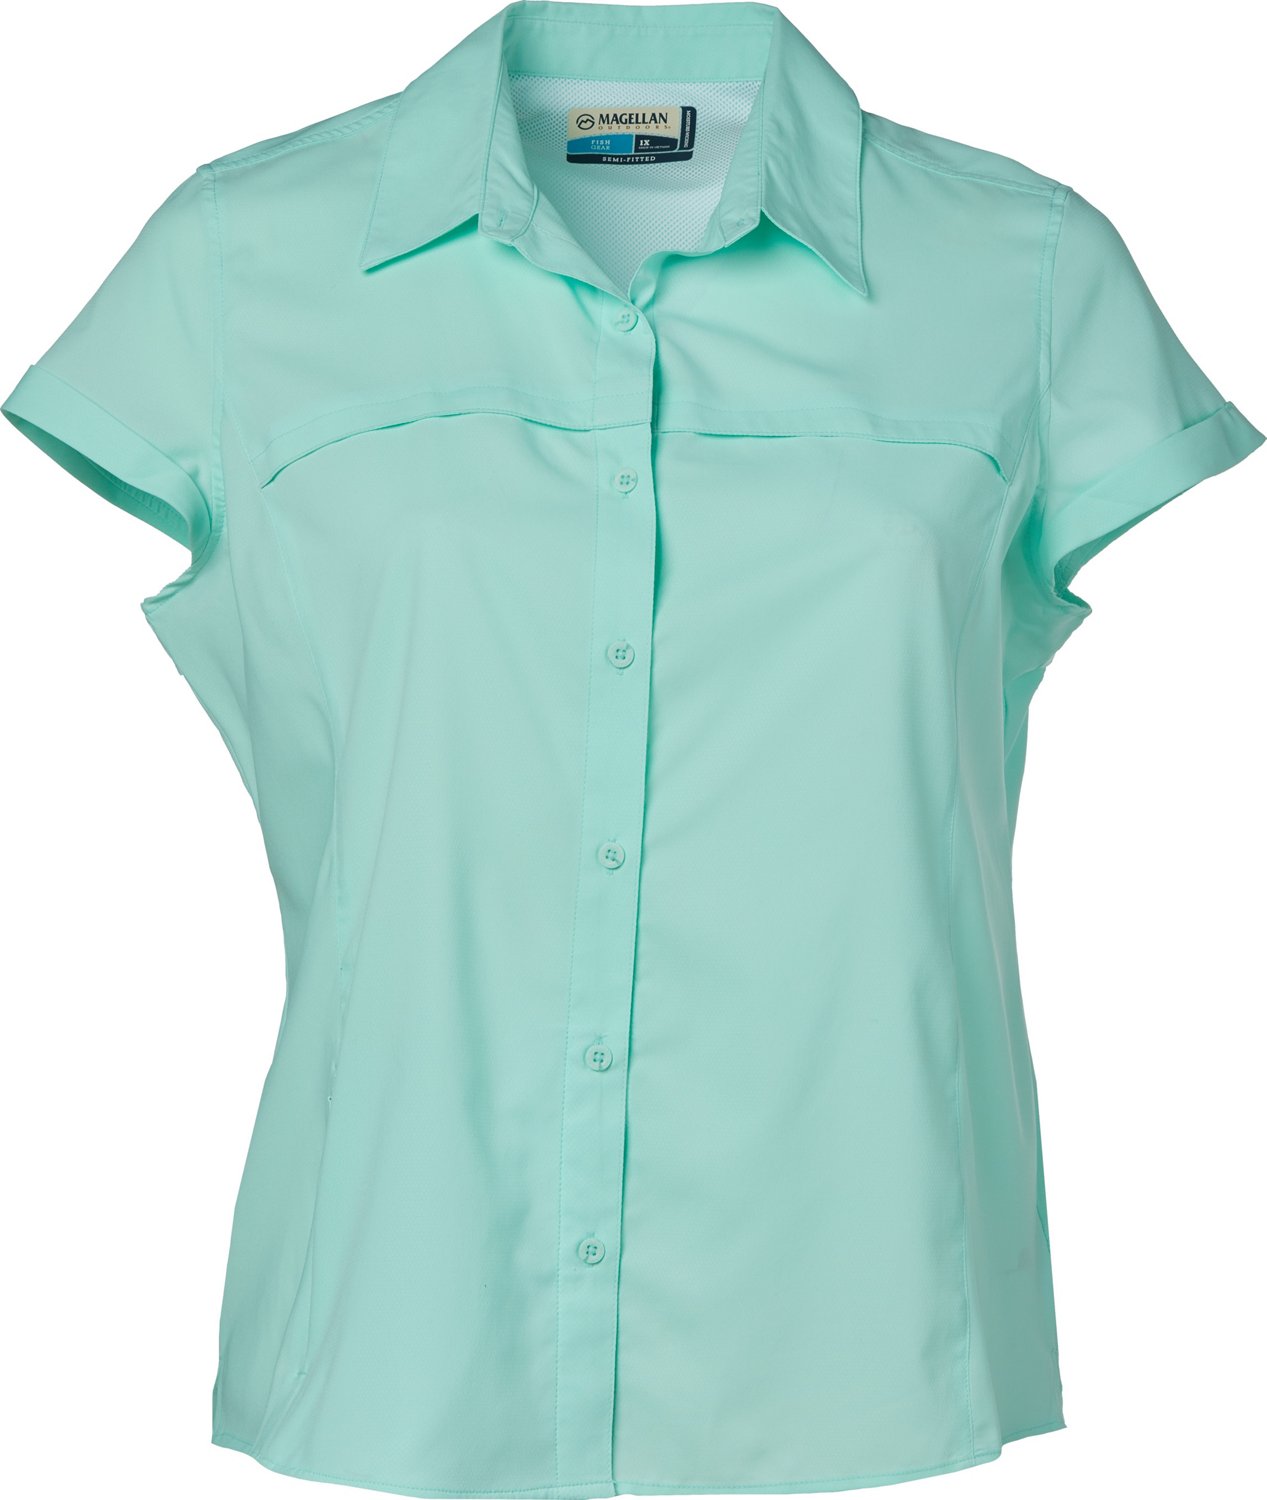 Magellan Outdoors Women's Overcast Plus Size Shirt | Academy